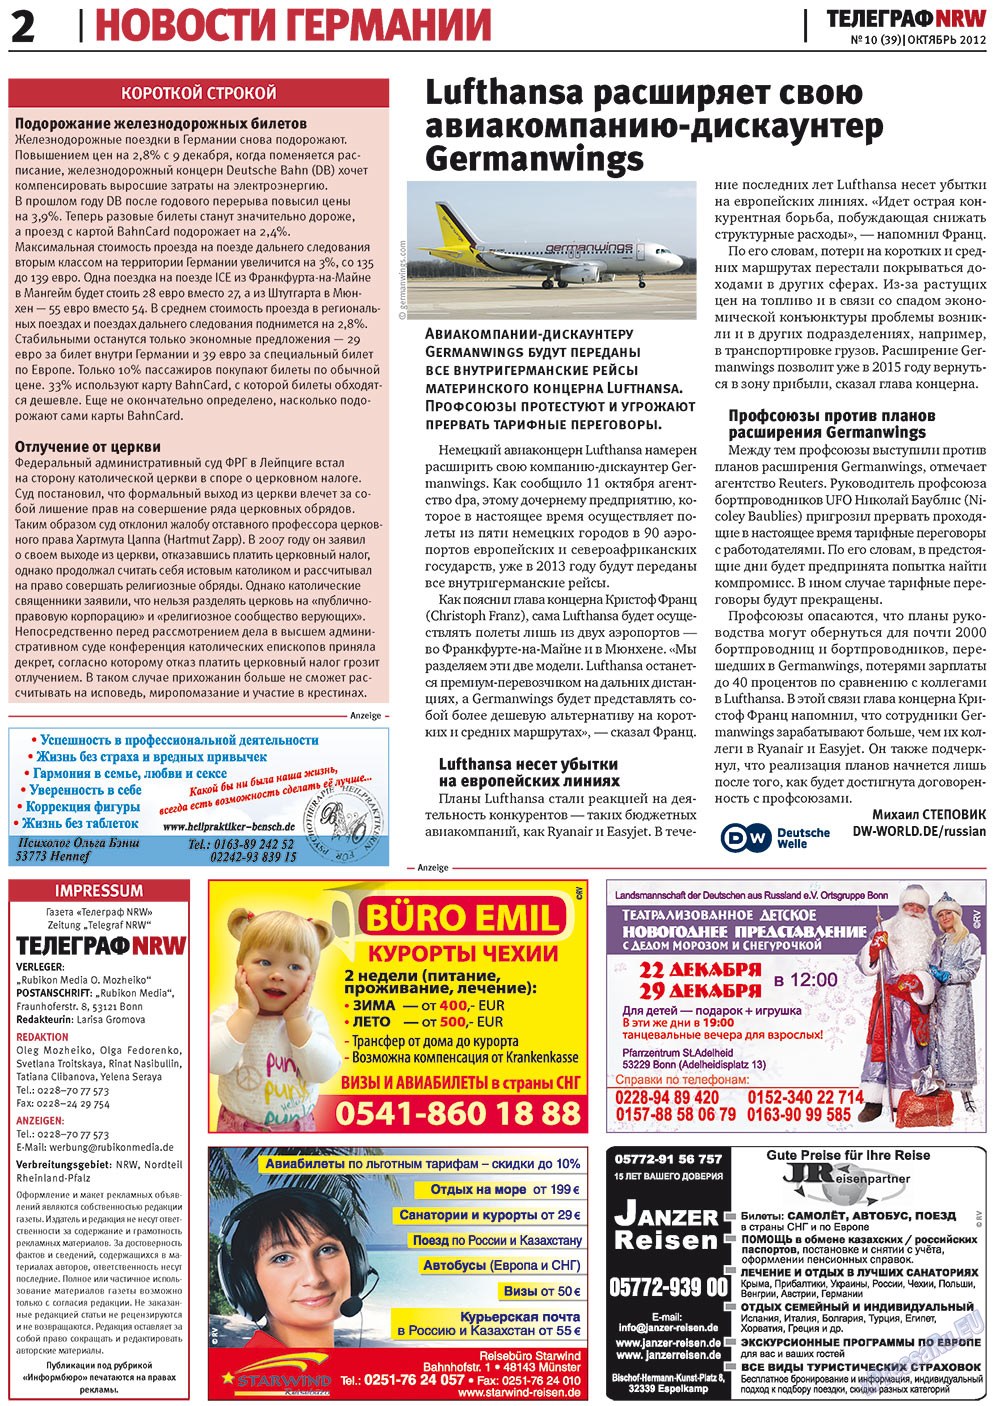 Телеграф NRW (газета). 2012 год, номер 10, стр. 2